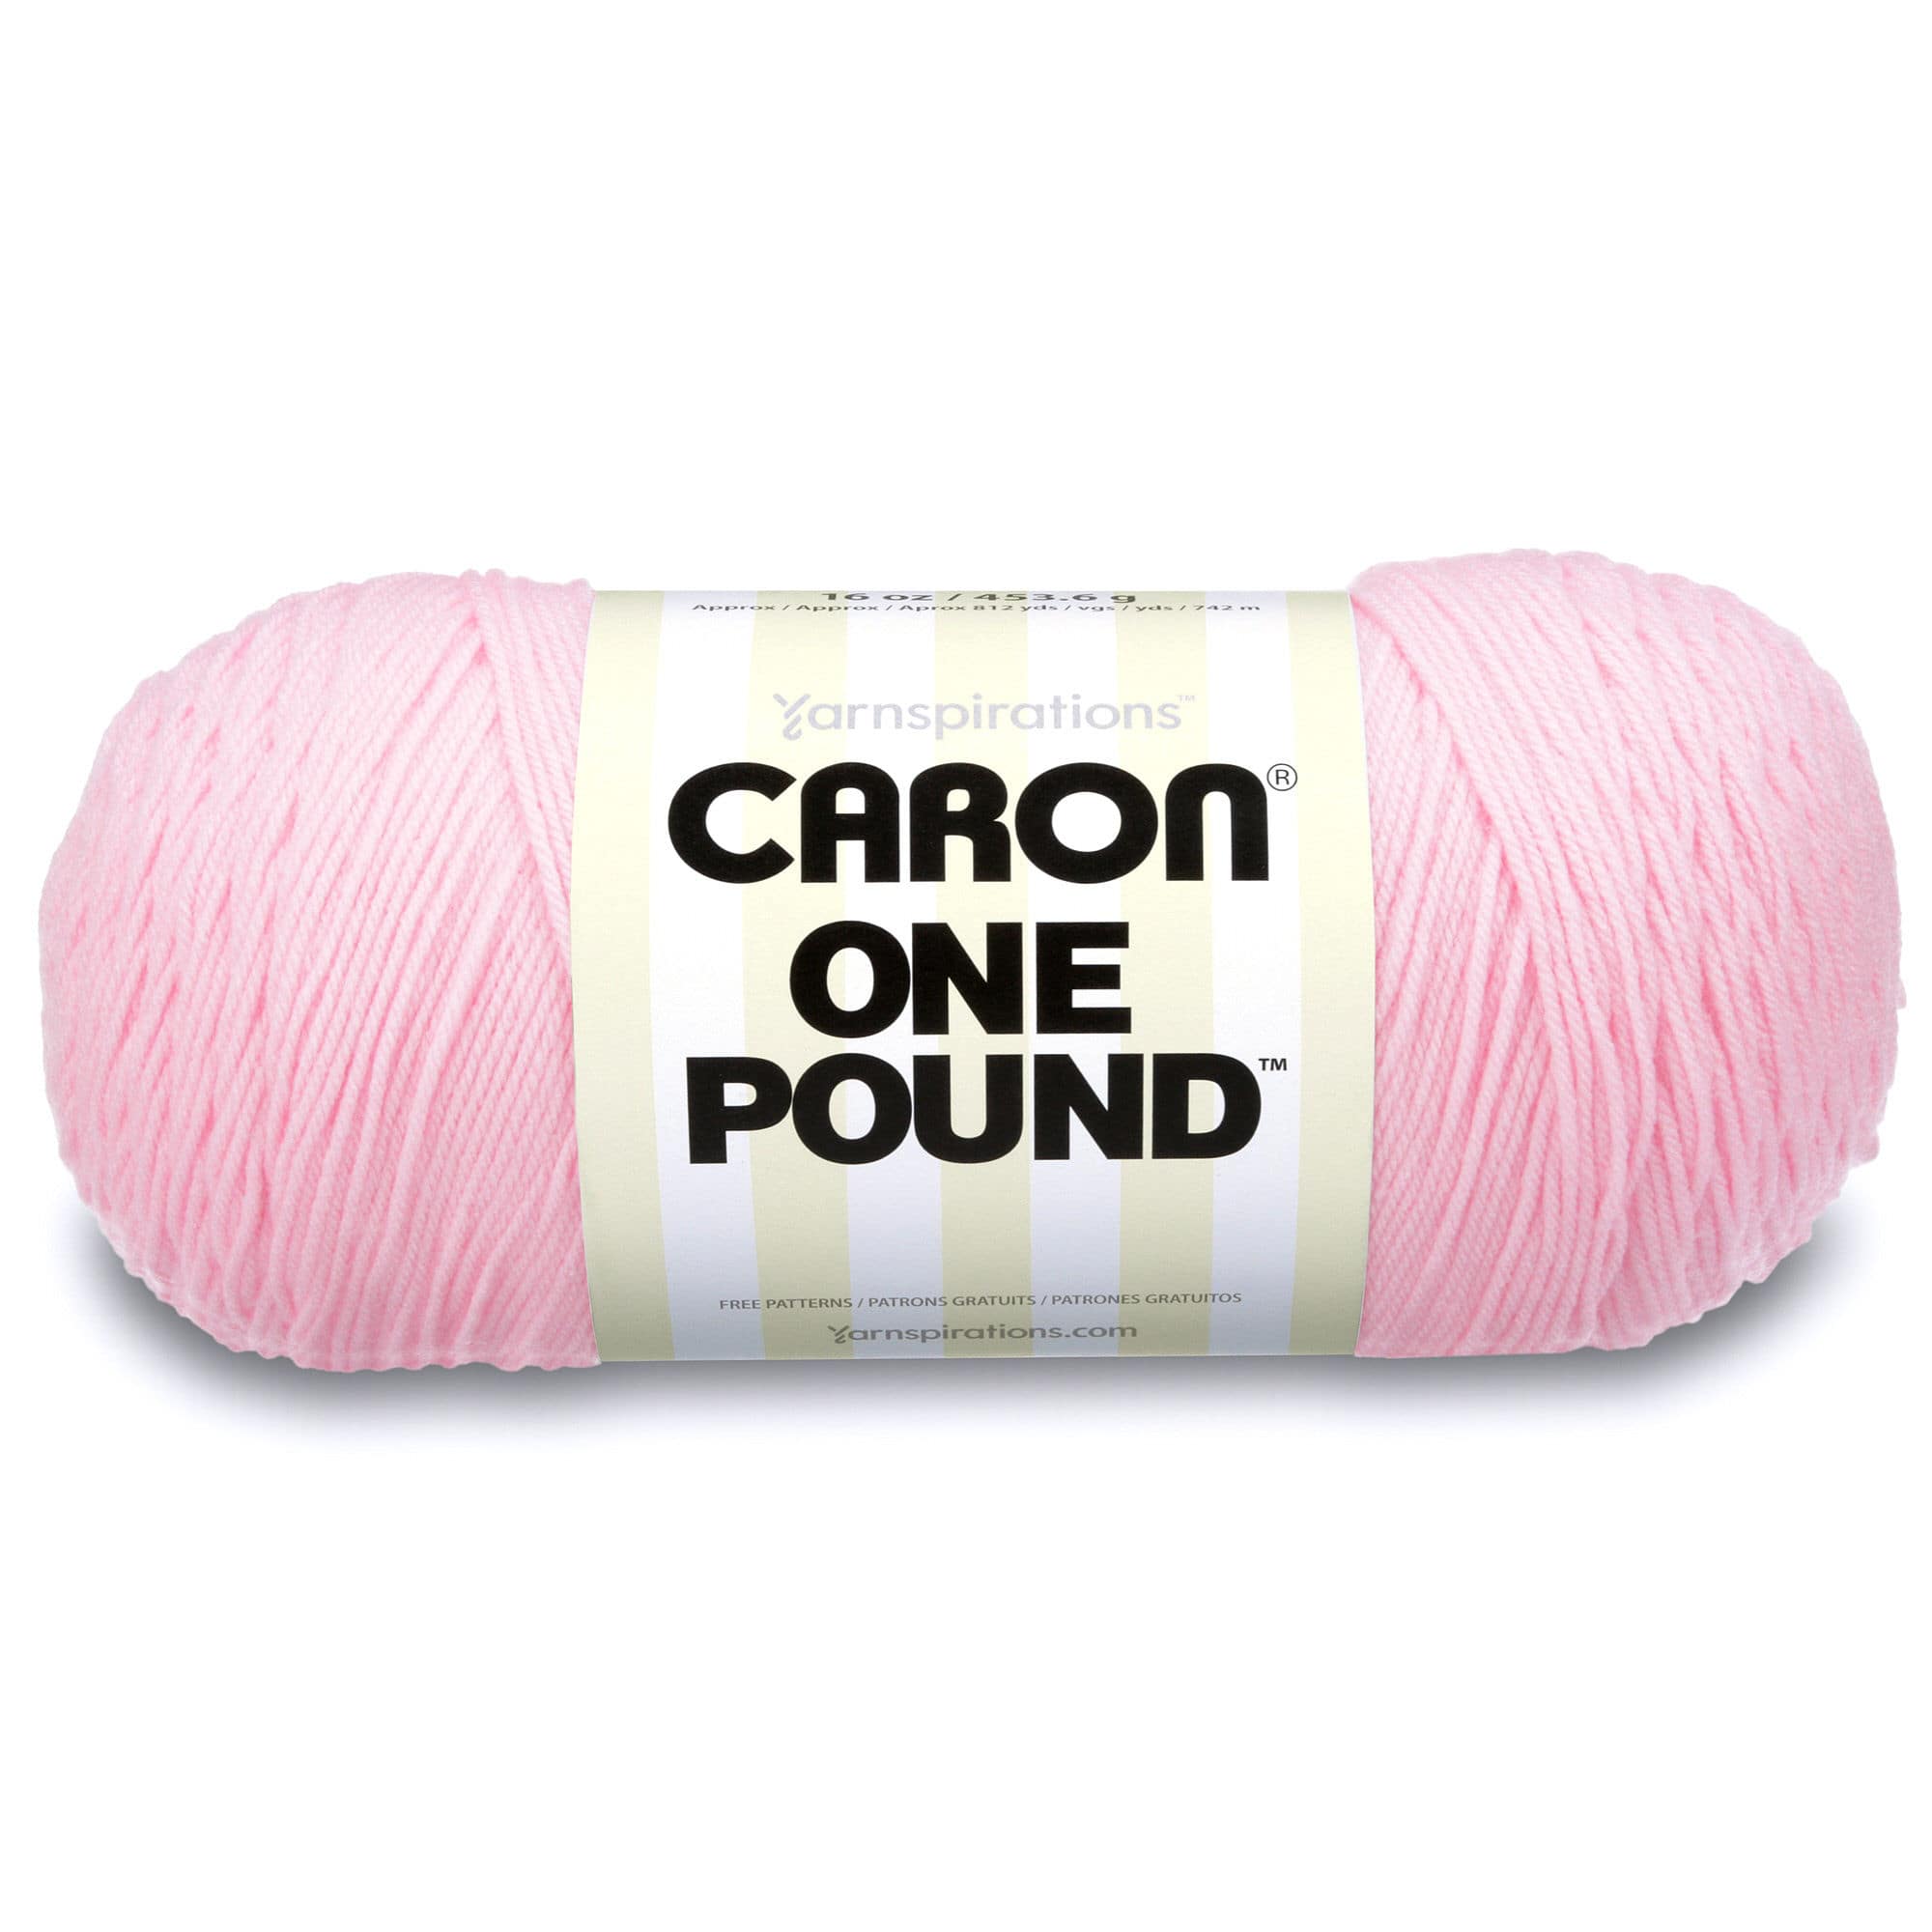 2 Pack Caron One Pound Yarn-Succulent 294010-10655 - GettyCrafts